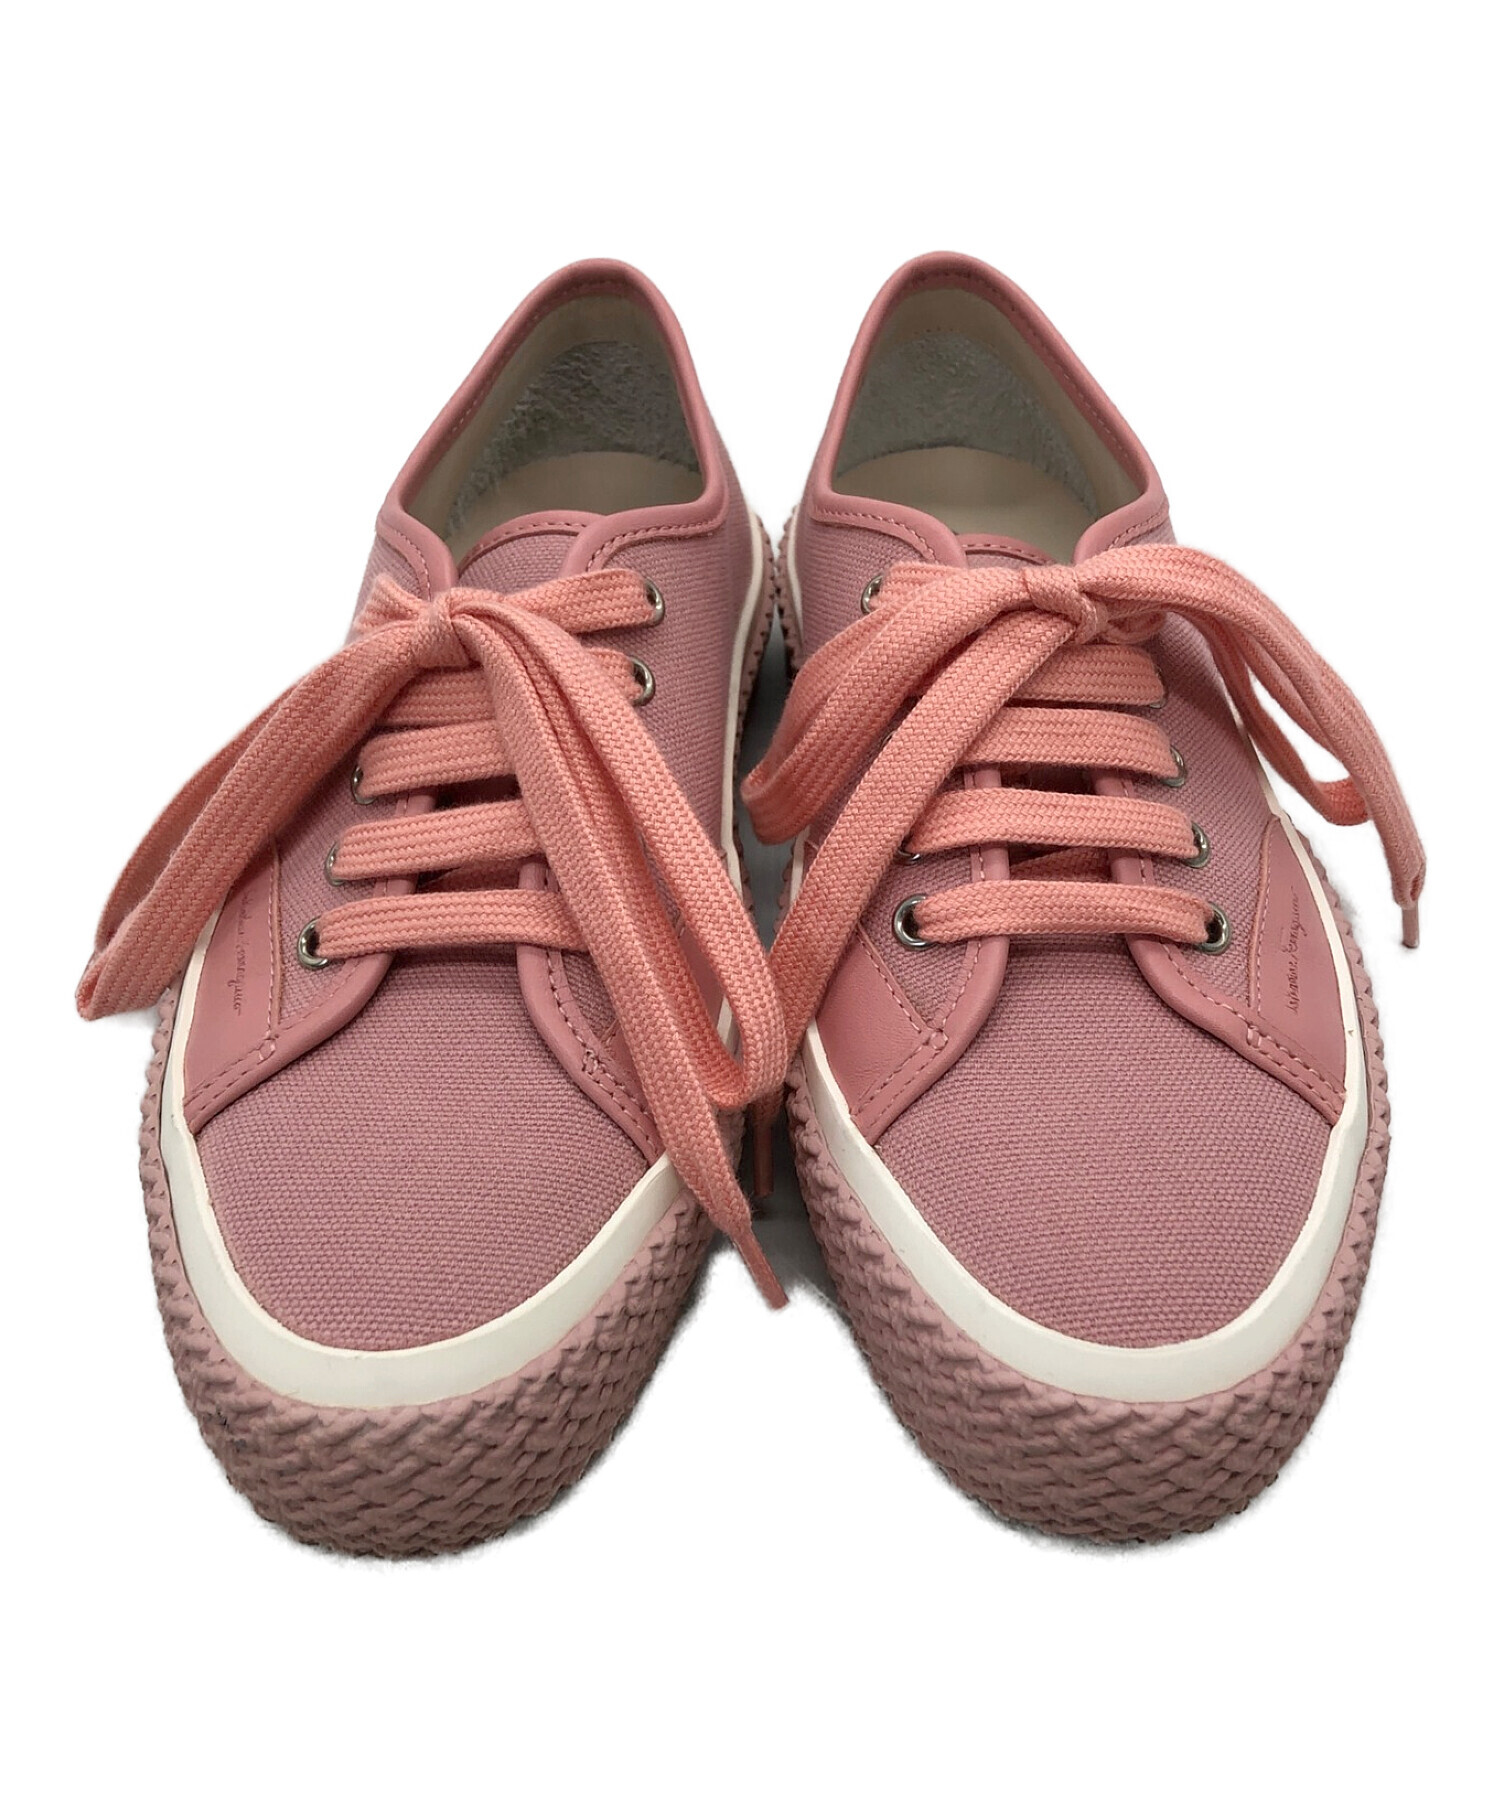 フェラガモ スニーカー ピンク - 靴